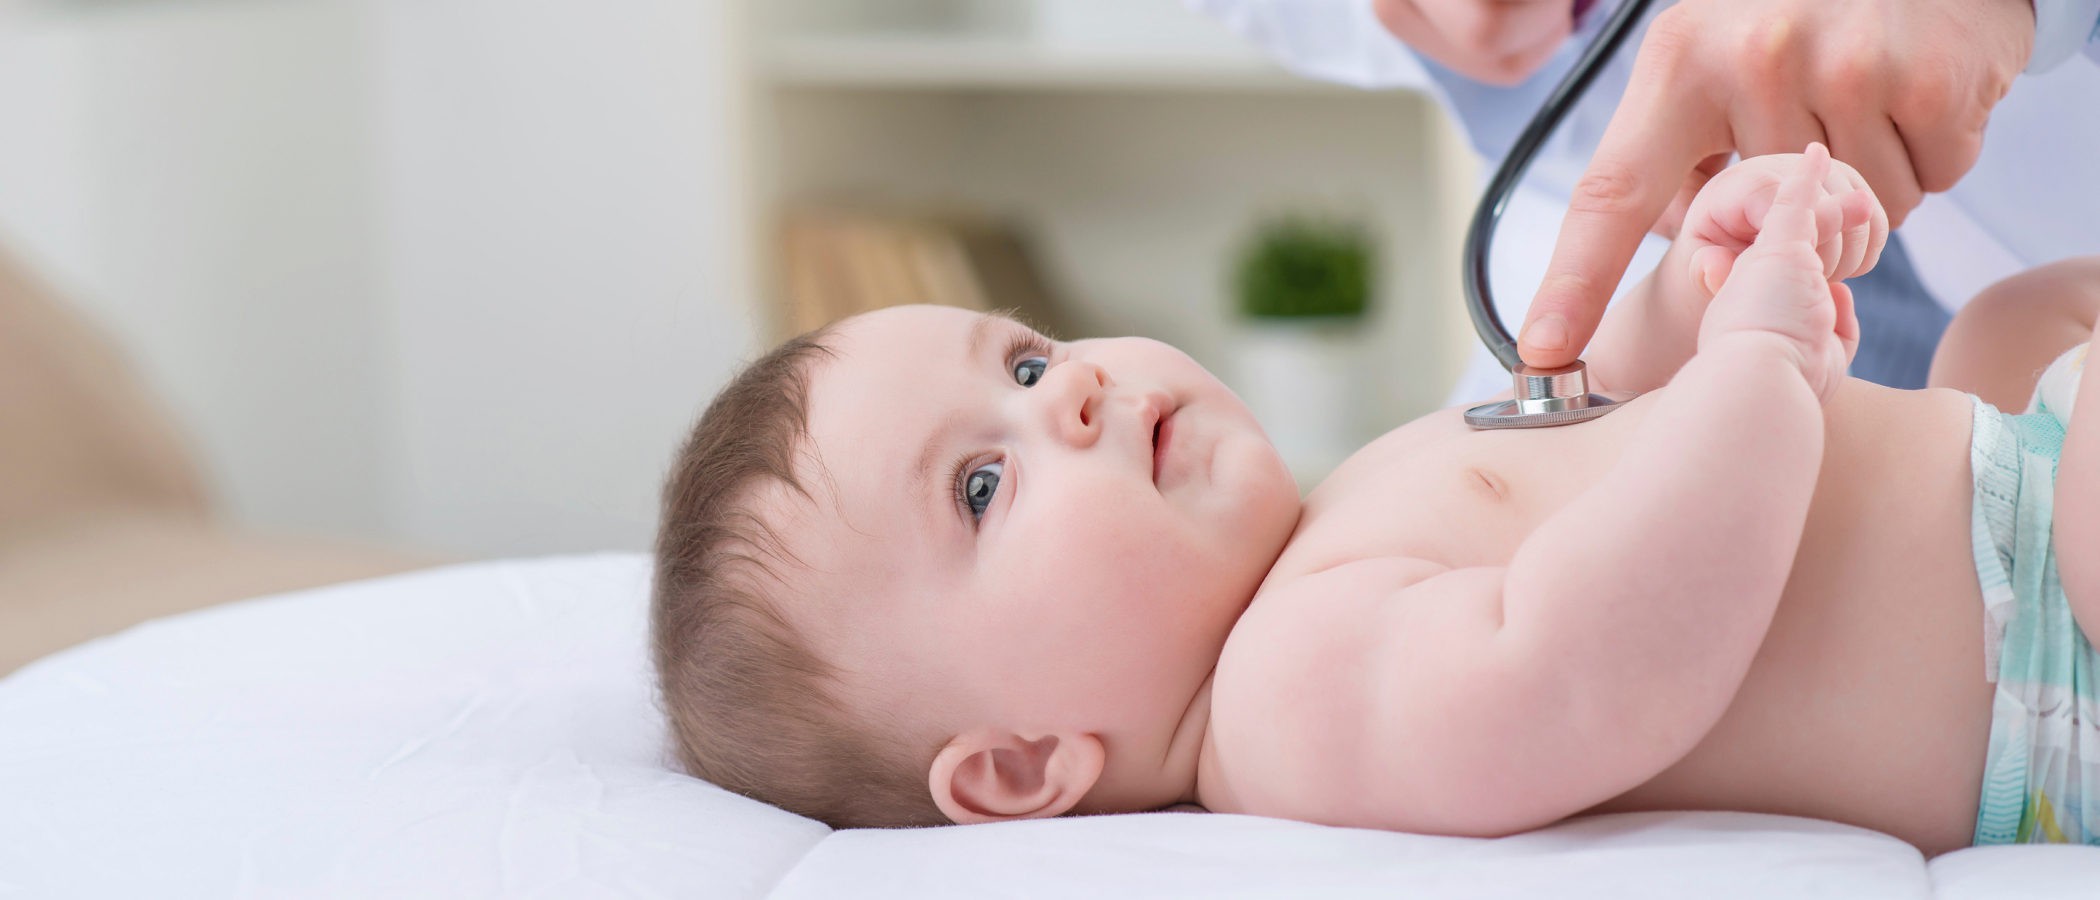 Primeros auxilios en caso de asfixia en un bebé